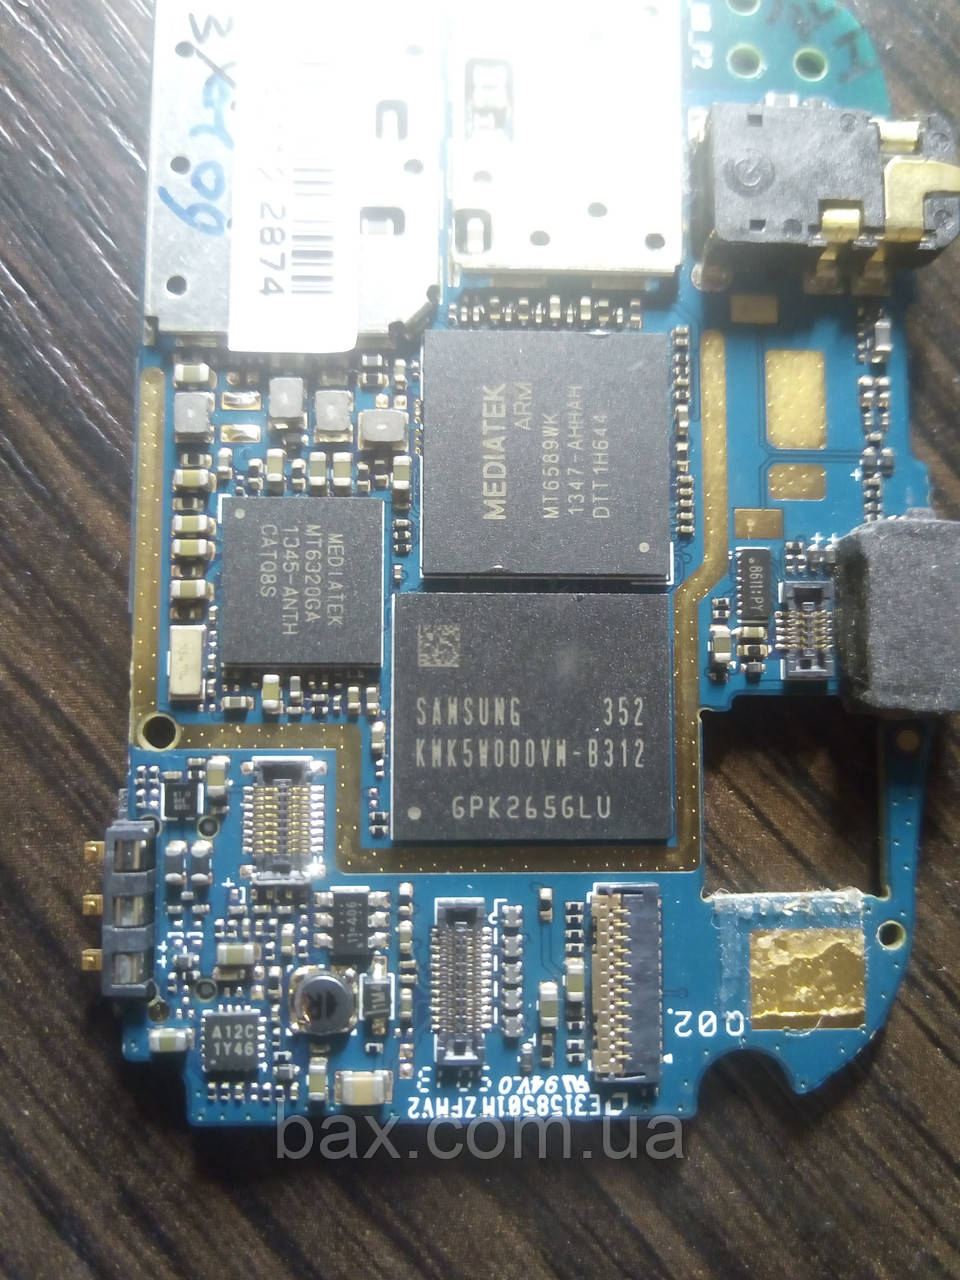 Мікросхема пам'яті Samsung KMK5W000VM-B312 На платі